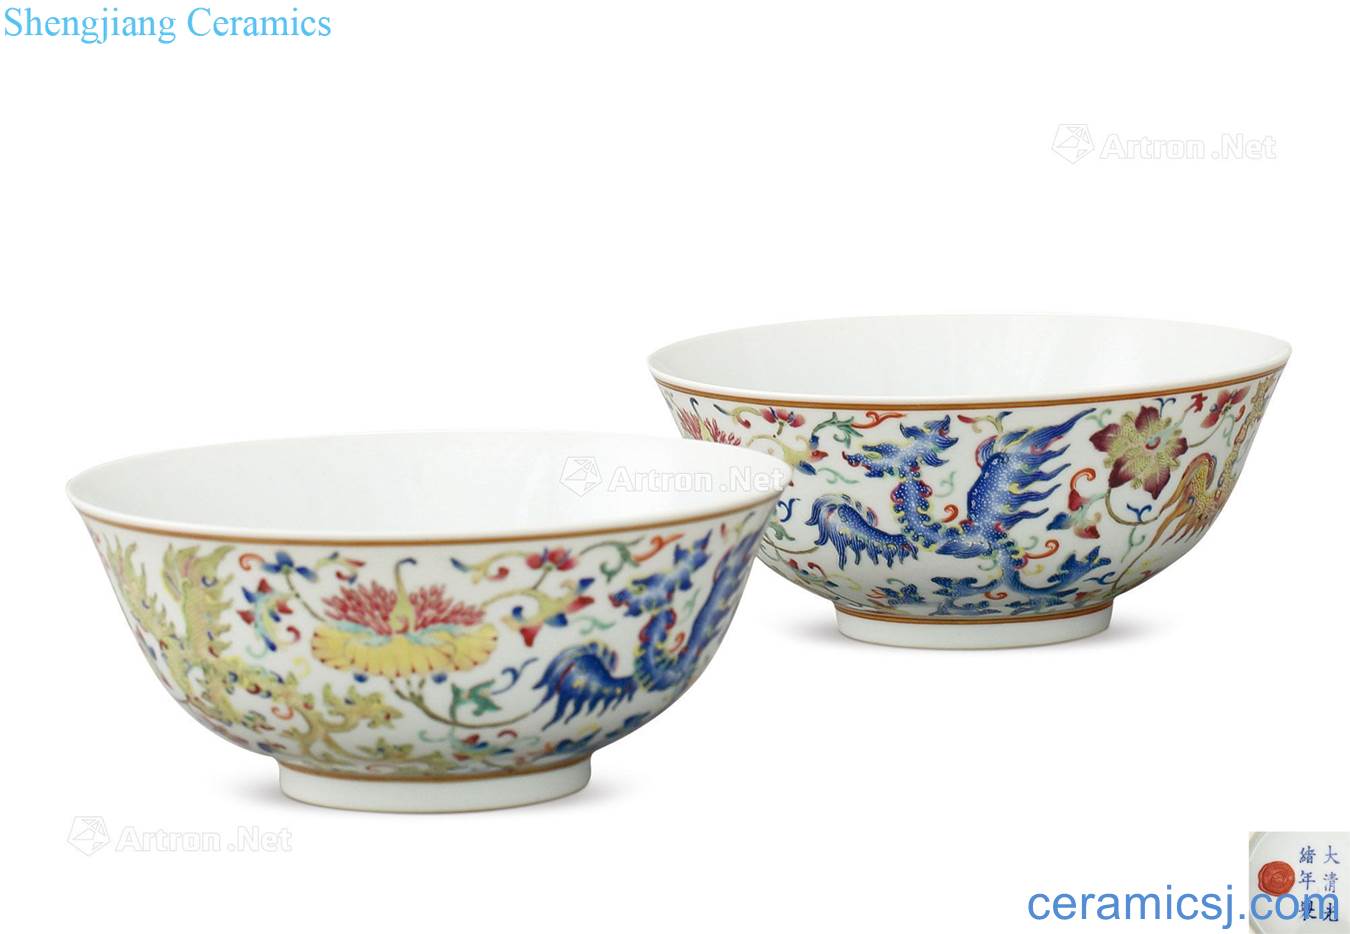 Dajing pastel phoenix grain bowl (a)